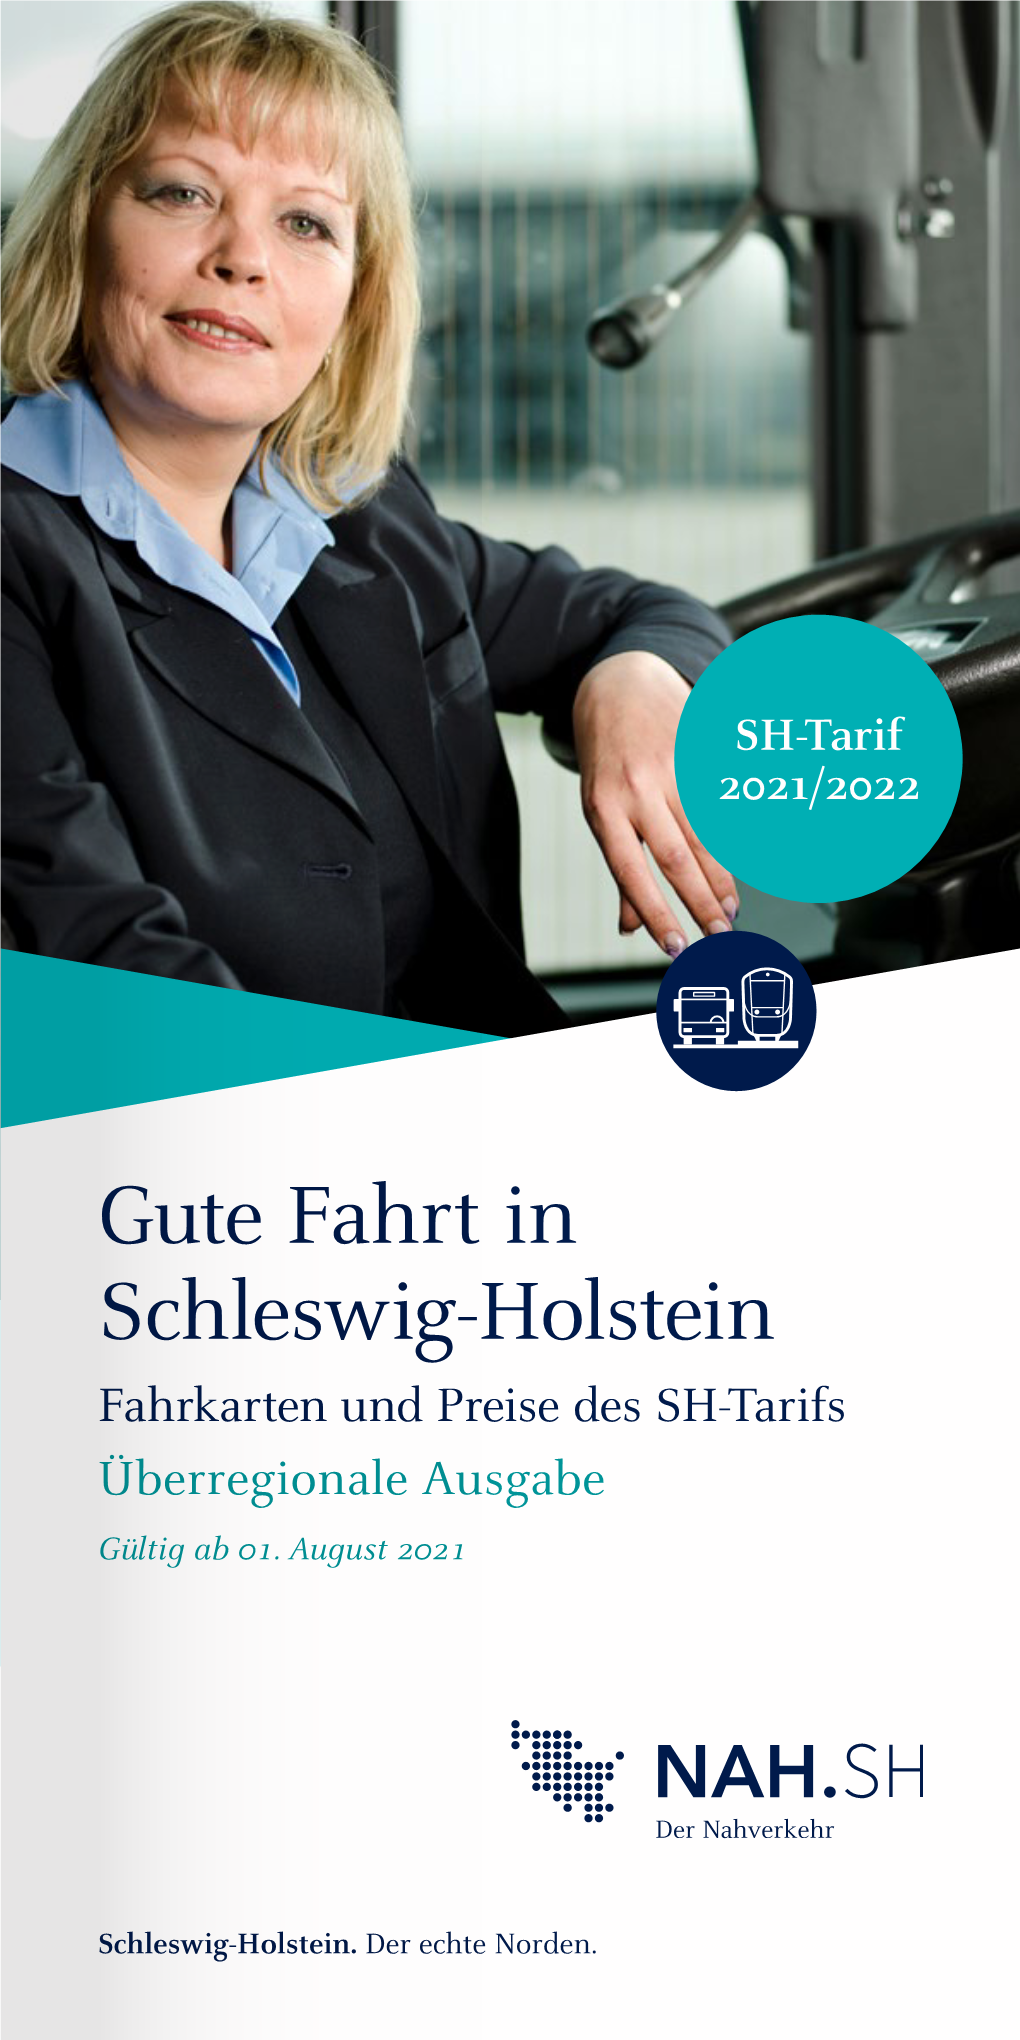 Gute Fahrt in Schleswig-Holstein Fahrkarten Und Preise Des SH-Tarifs Überregionale Ausgabe Gültig Ab 01